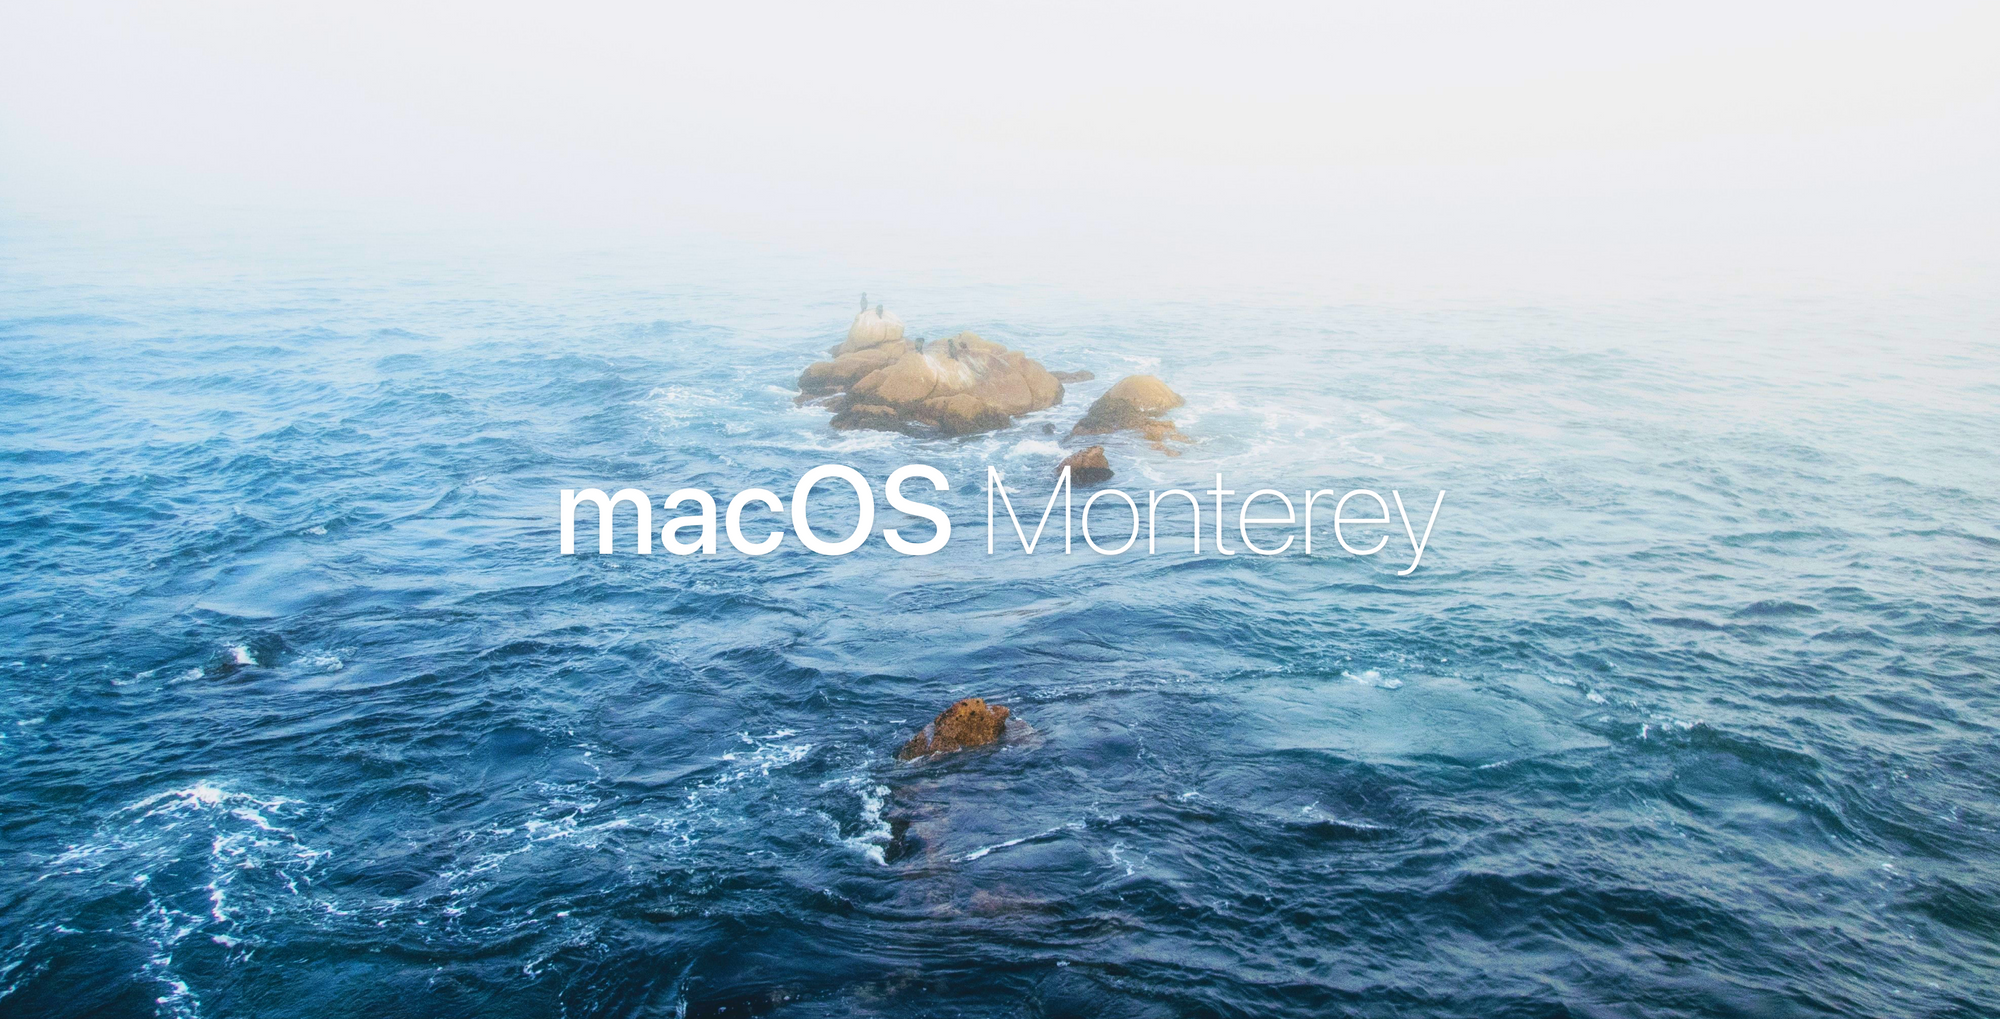 Conceito apresenta o macOS “Monterey” com pequenas mas boas novidades post image